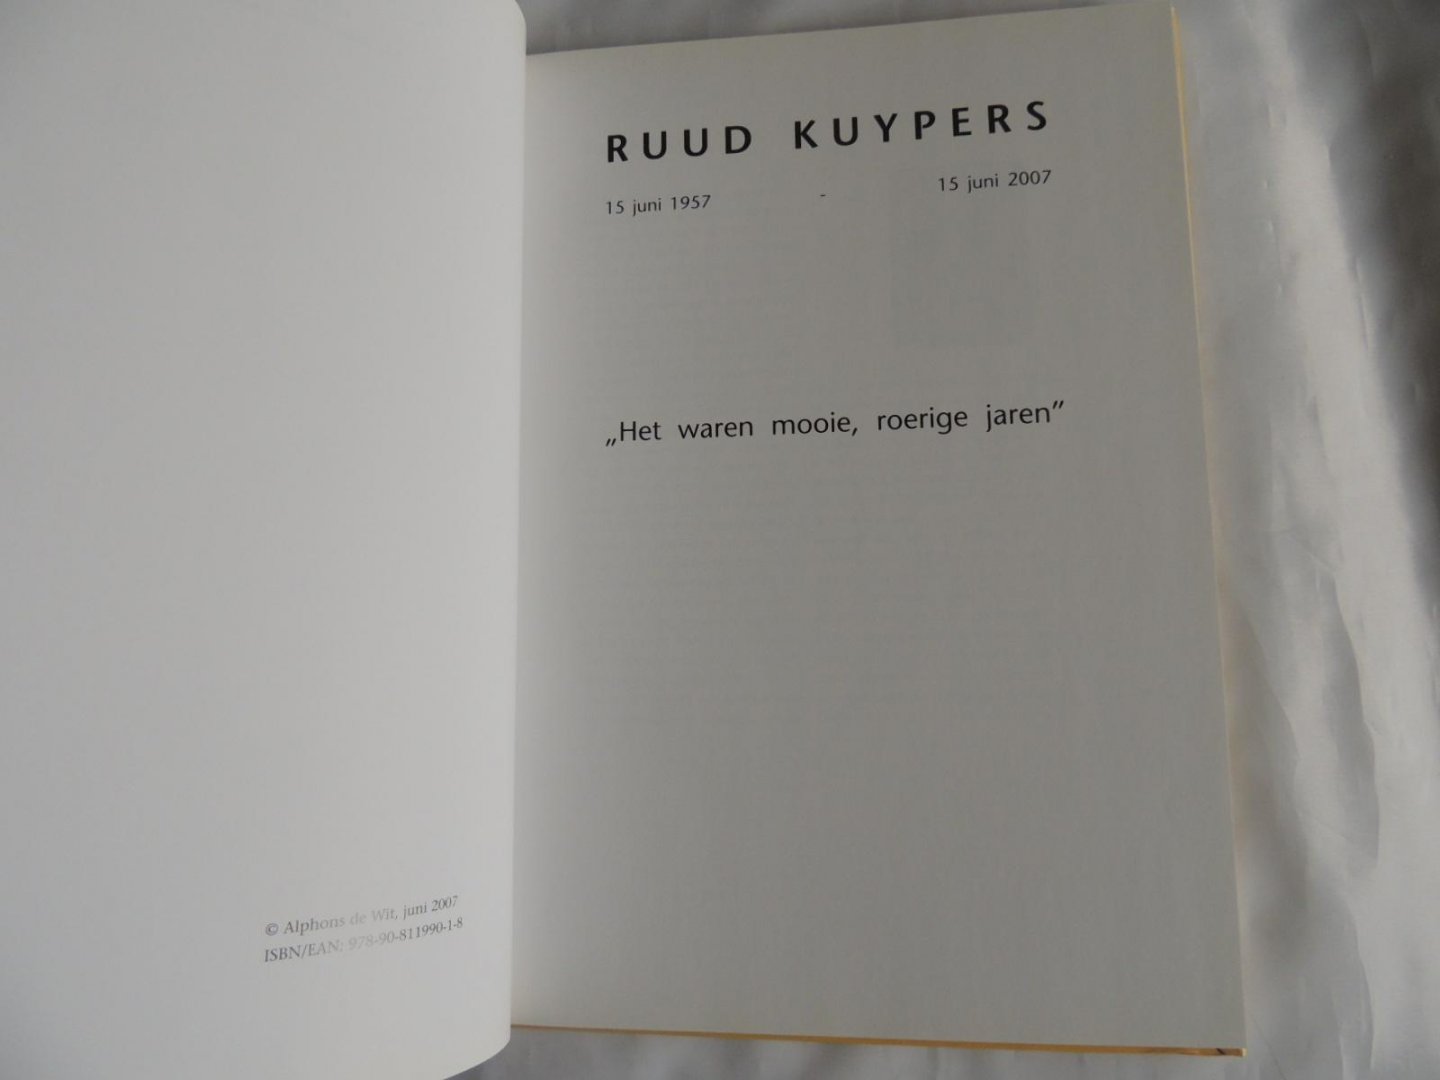 Wit, Alphons de - ALLELUIA - Ruud Kuypers - 15 juni 1957 - 15 juni 2007